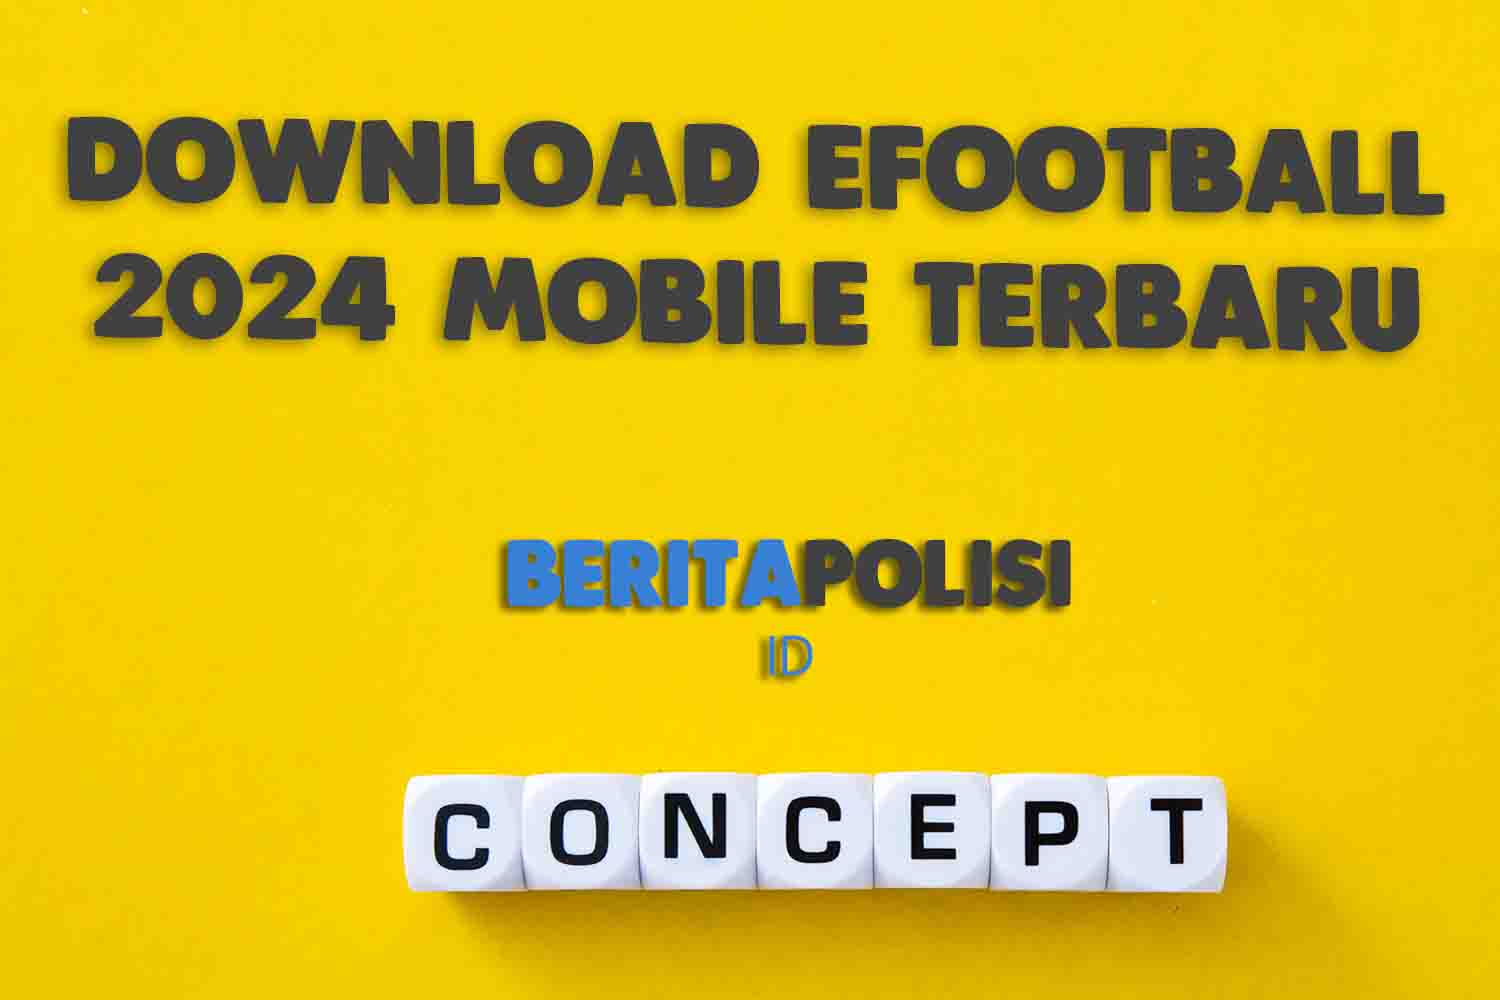 Download Efootball 2024 Mobile Terbaru